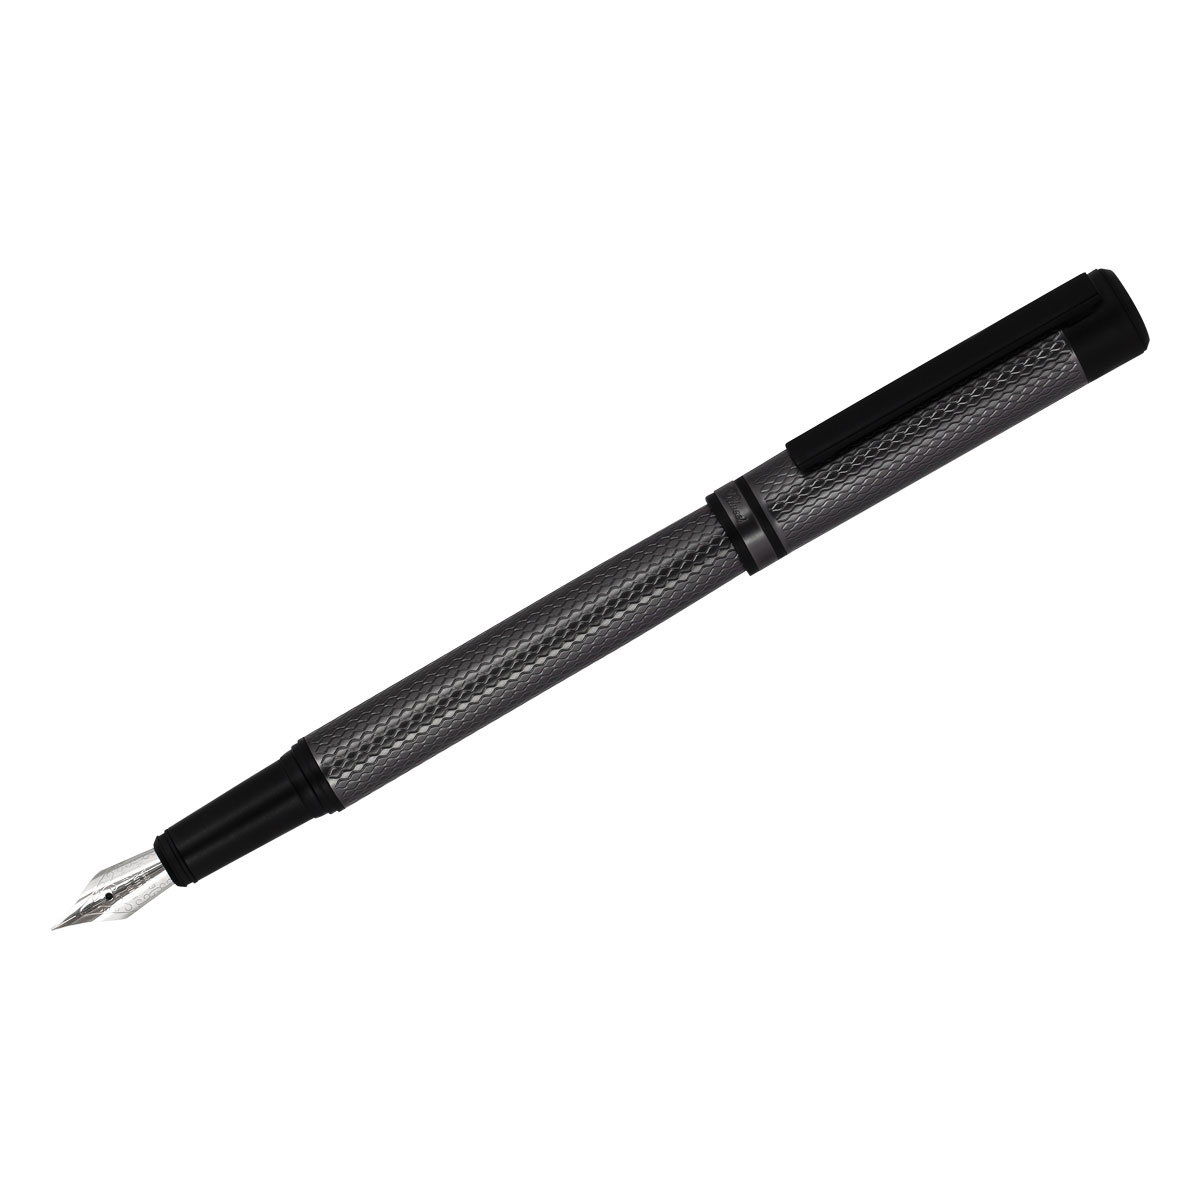 Ручка перьевая Delucci "Antica" черная, 0,8мм, корпус графит/черный, подарочный футляр